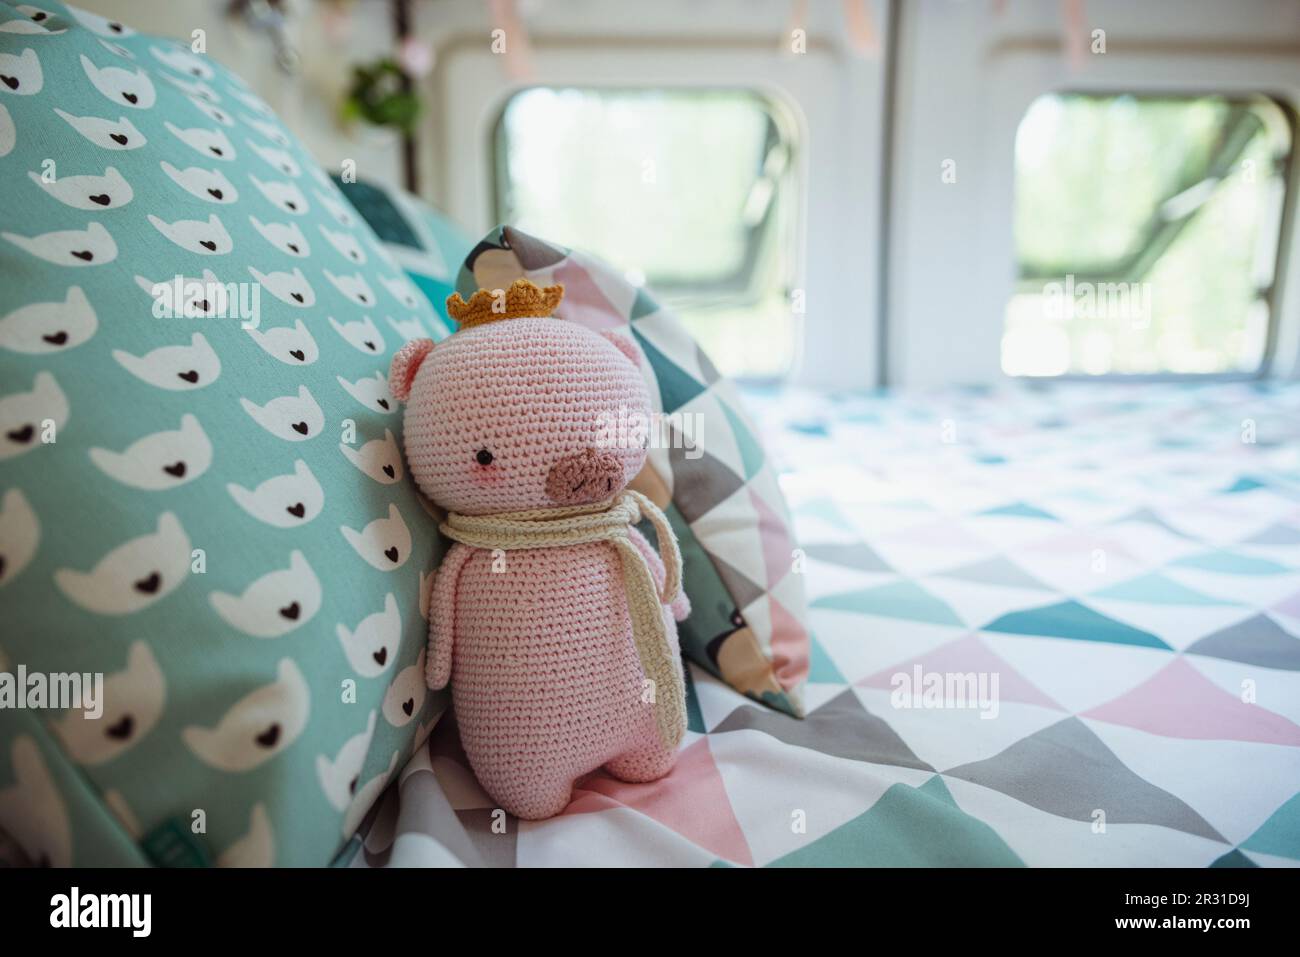 Primo piano di un maiale a crochet fatto in casa (Amigurumi) su un letto in un camper furgone Foto Stock